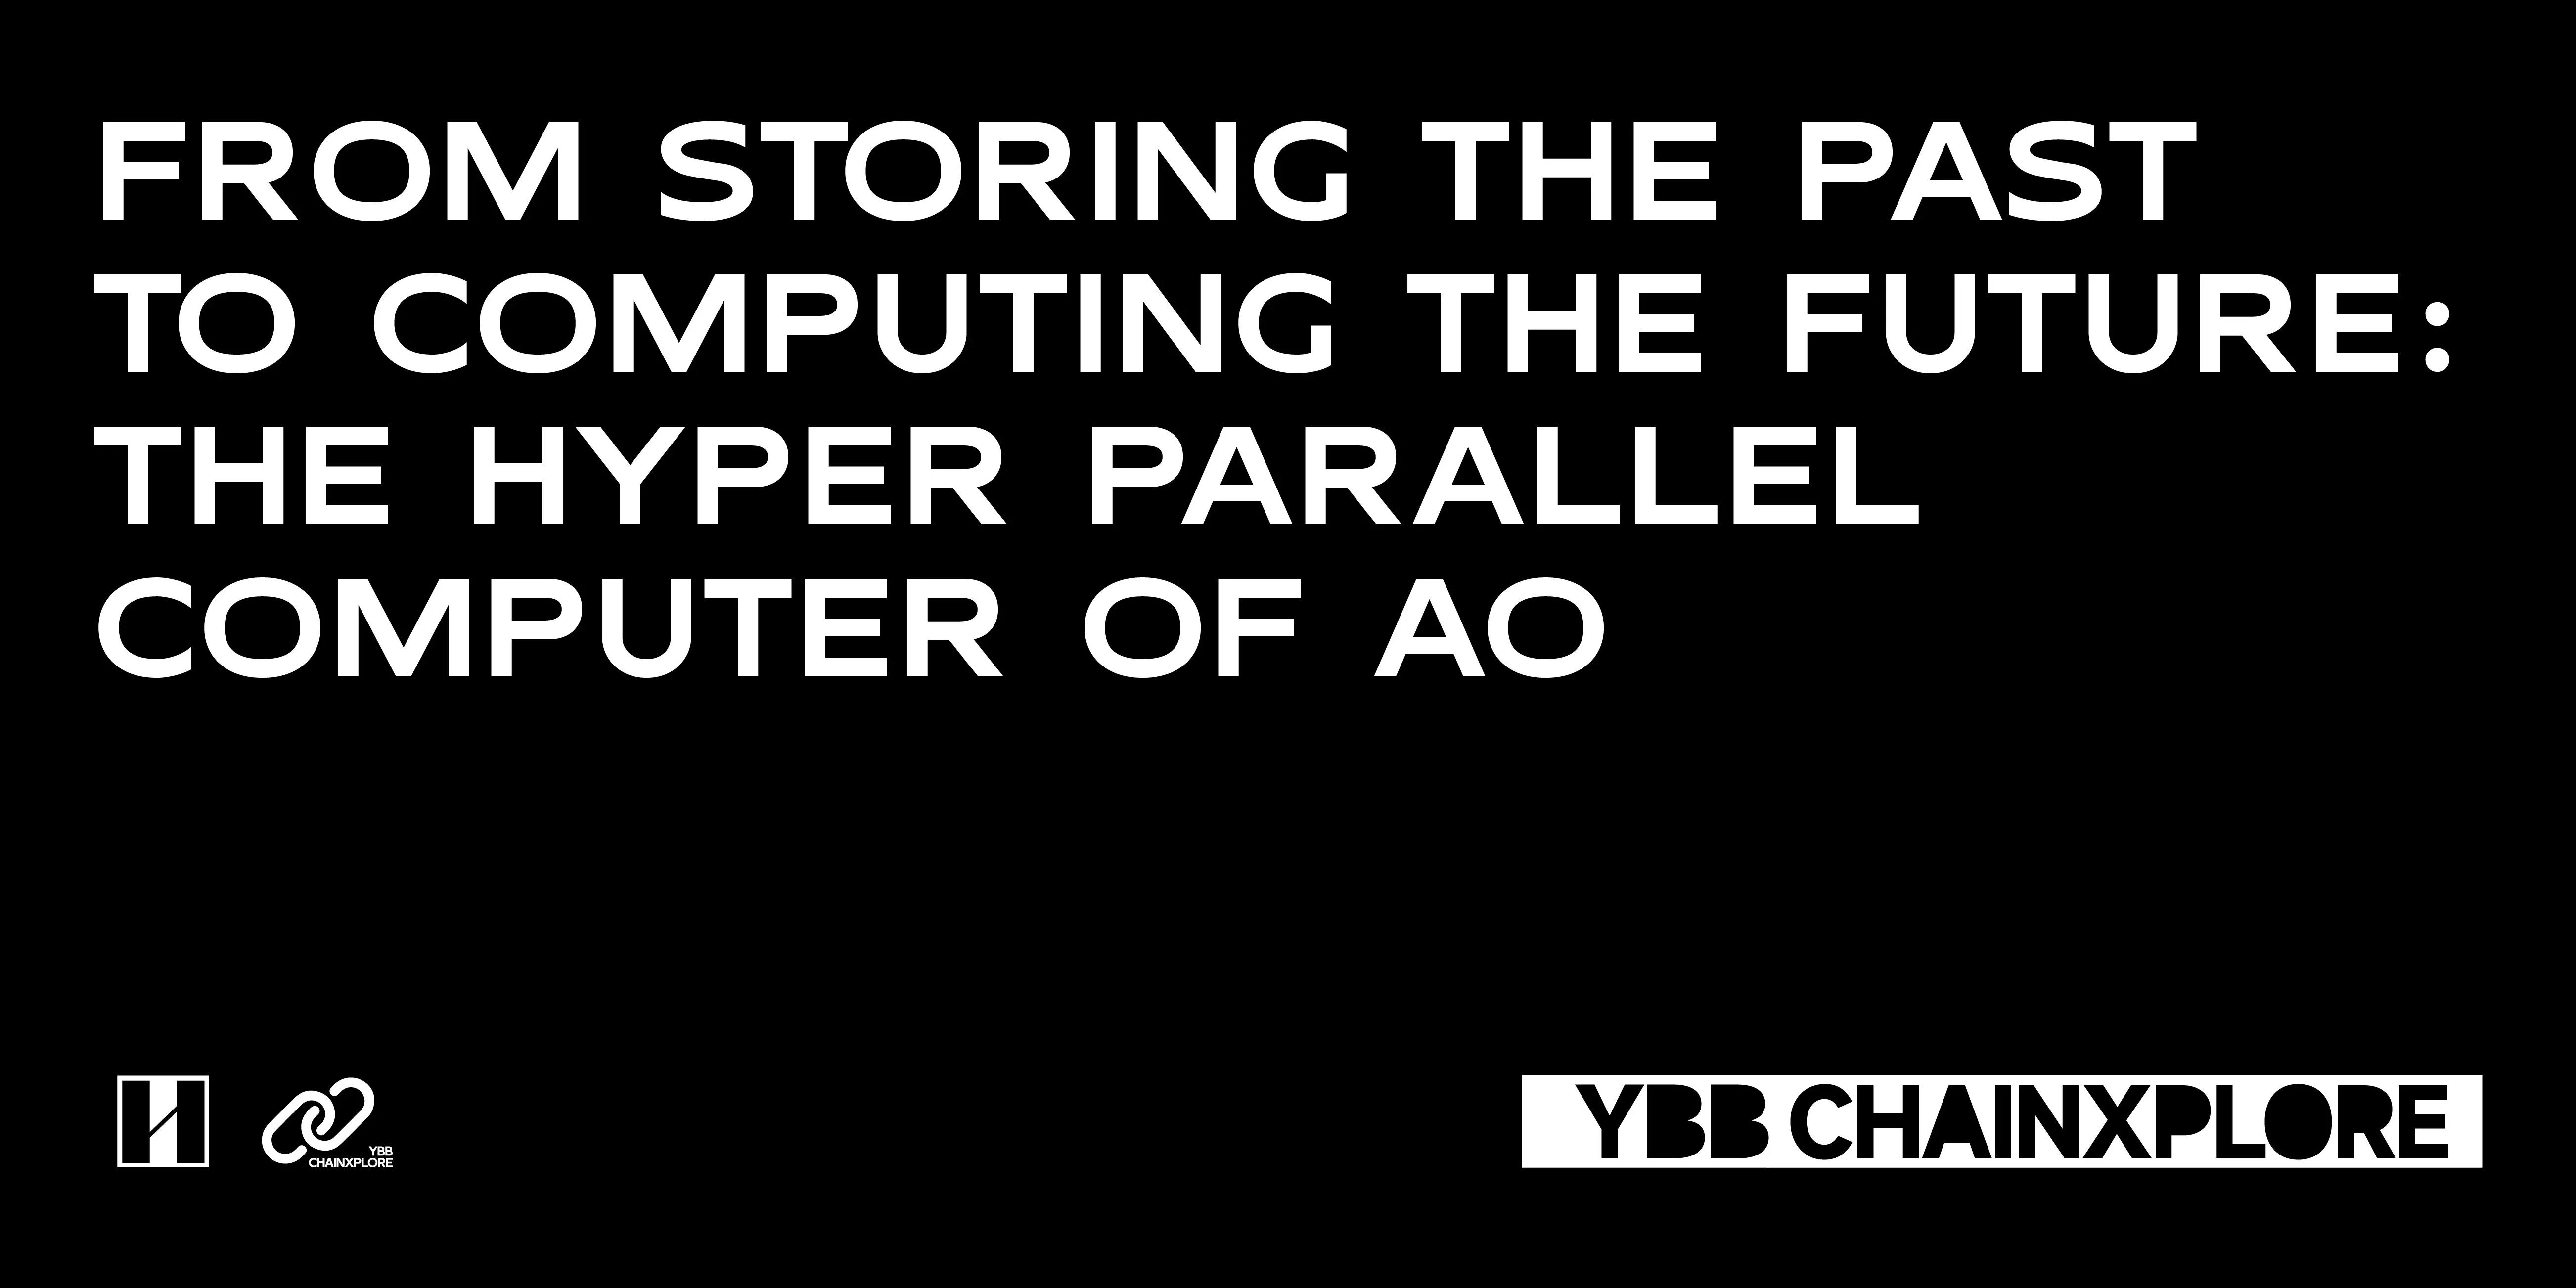 从存储过去到计算未来：AO 超并行计算机